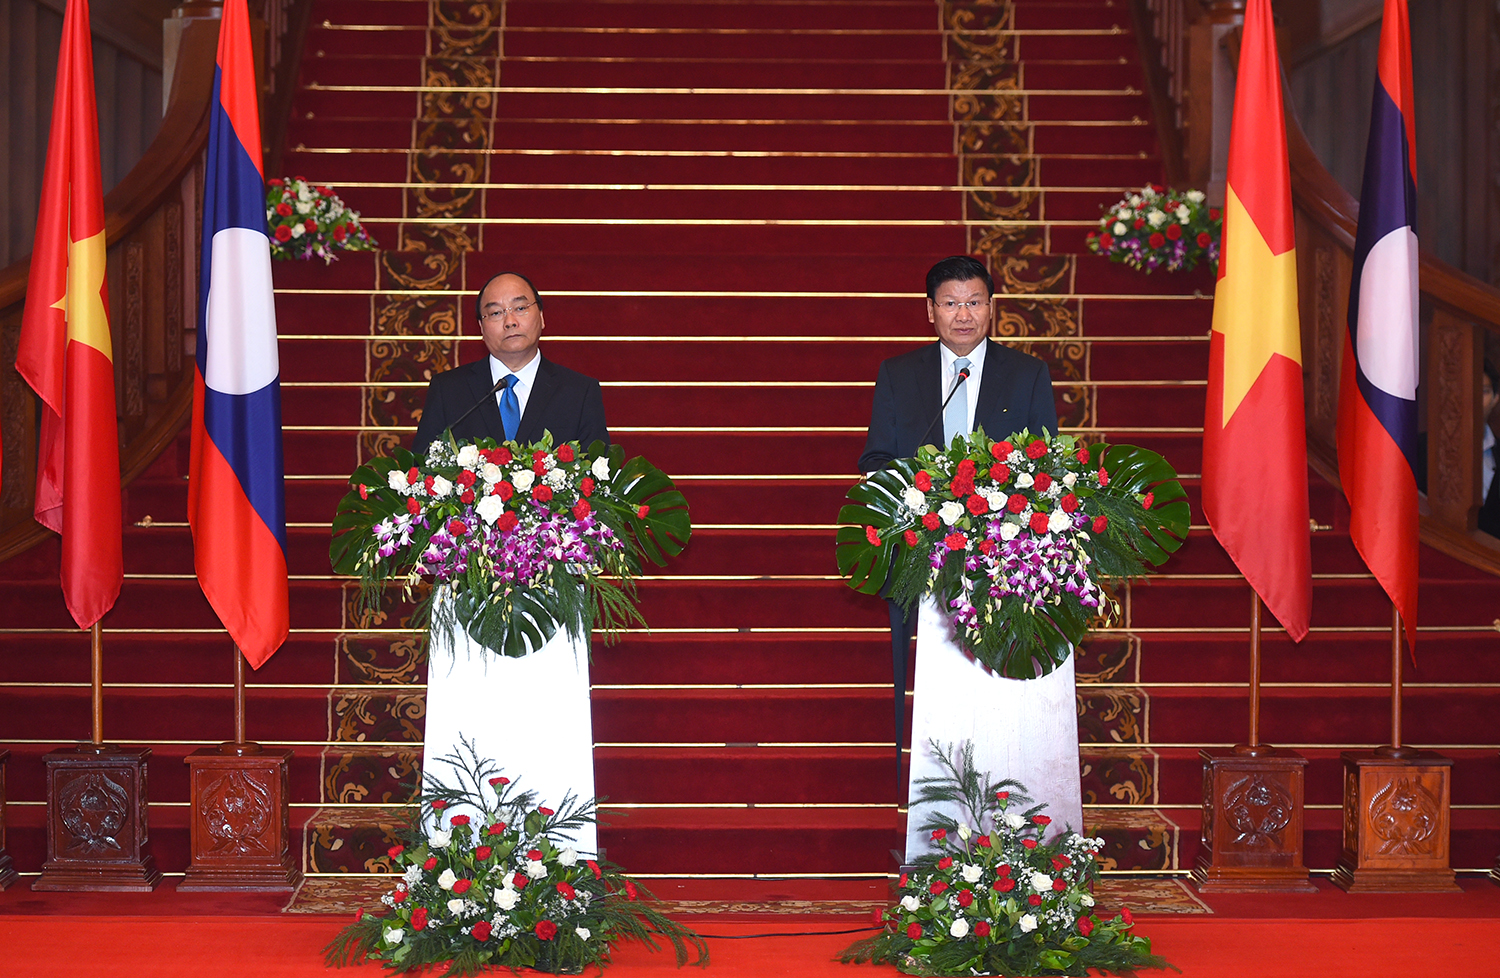 Thủ tướng Nguyễn Xuân Phúc và Thủ tướng Lào chủ trì họp báo sau hội đàm (Ảnh: VGP/Quang Hiếu)